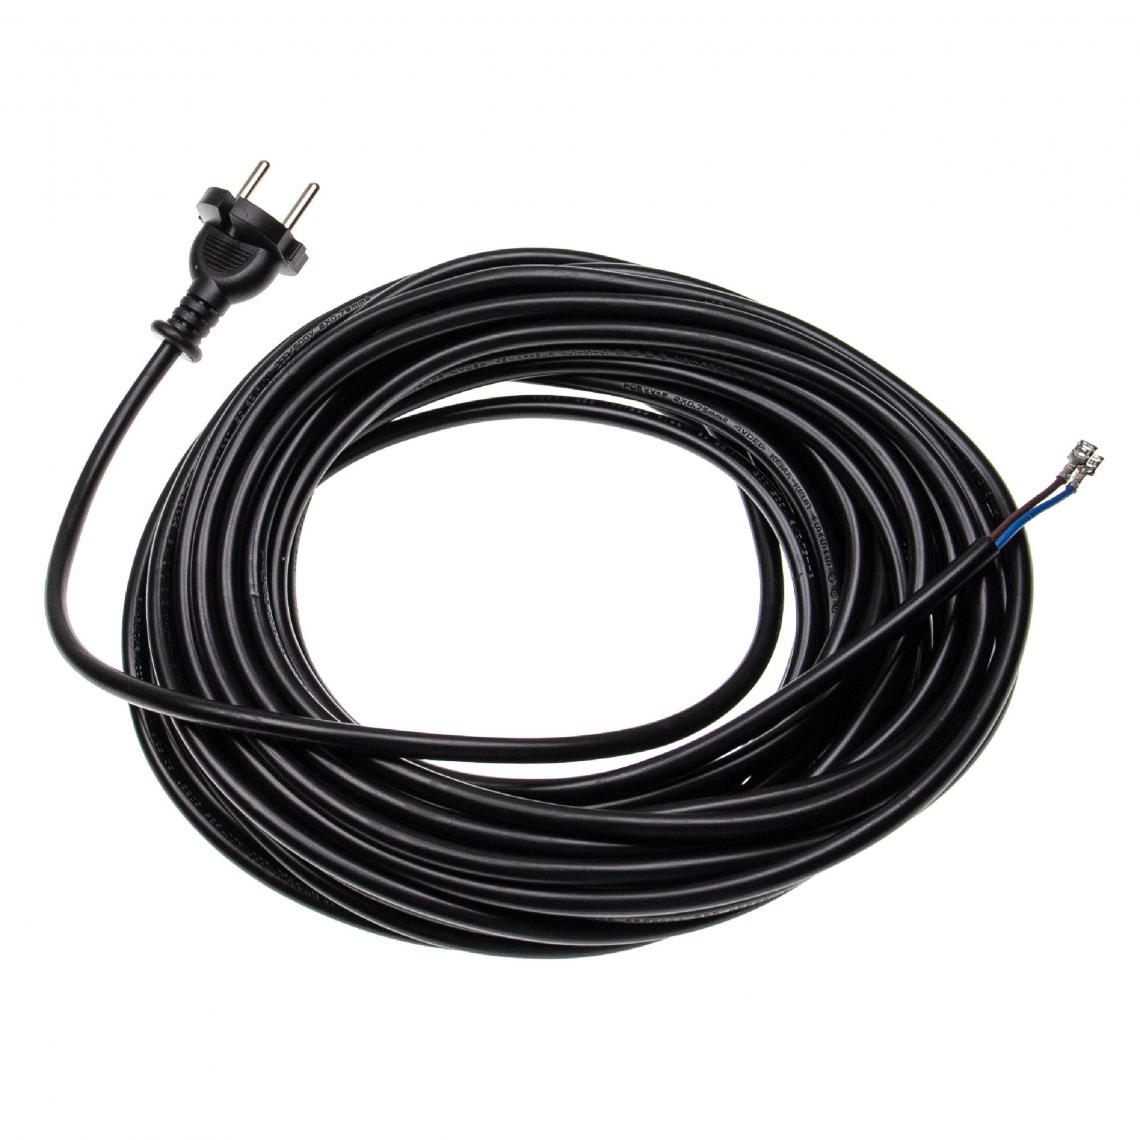 Vhbw - vhbw Câble électrique compatible avec Philips FC-Serie, HR-Serie, Marathon aspirateurs - 15 m, 4000 W - Accessoire entretien des sols